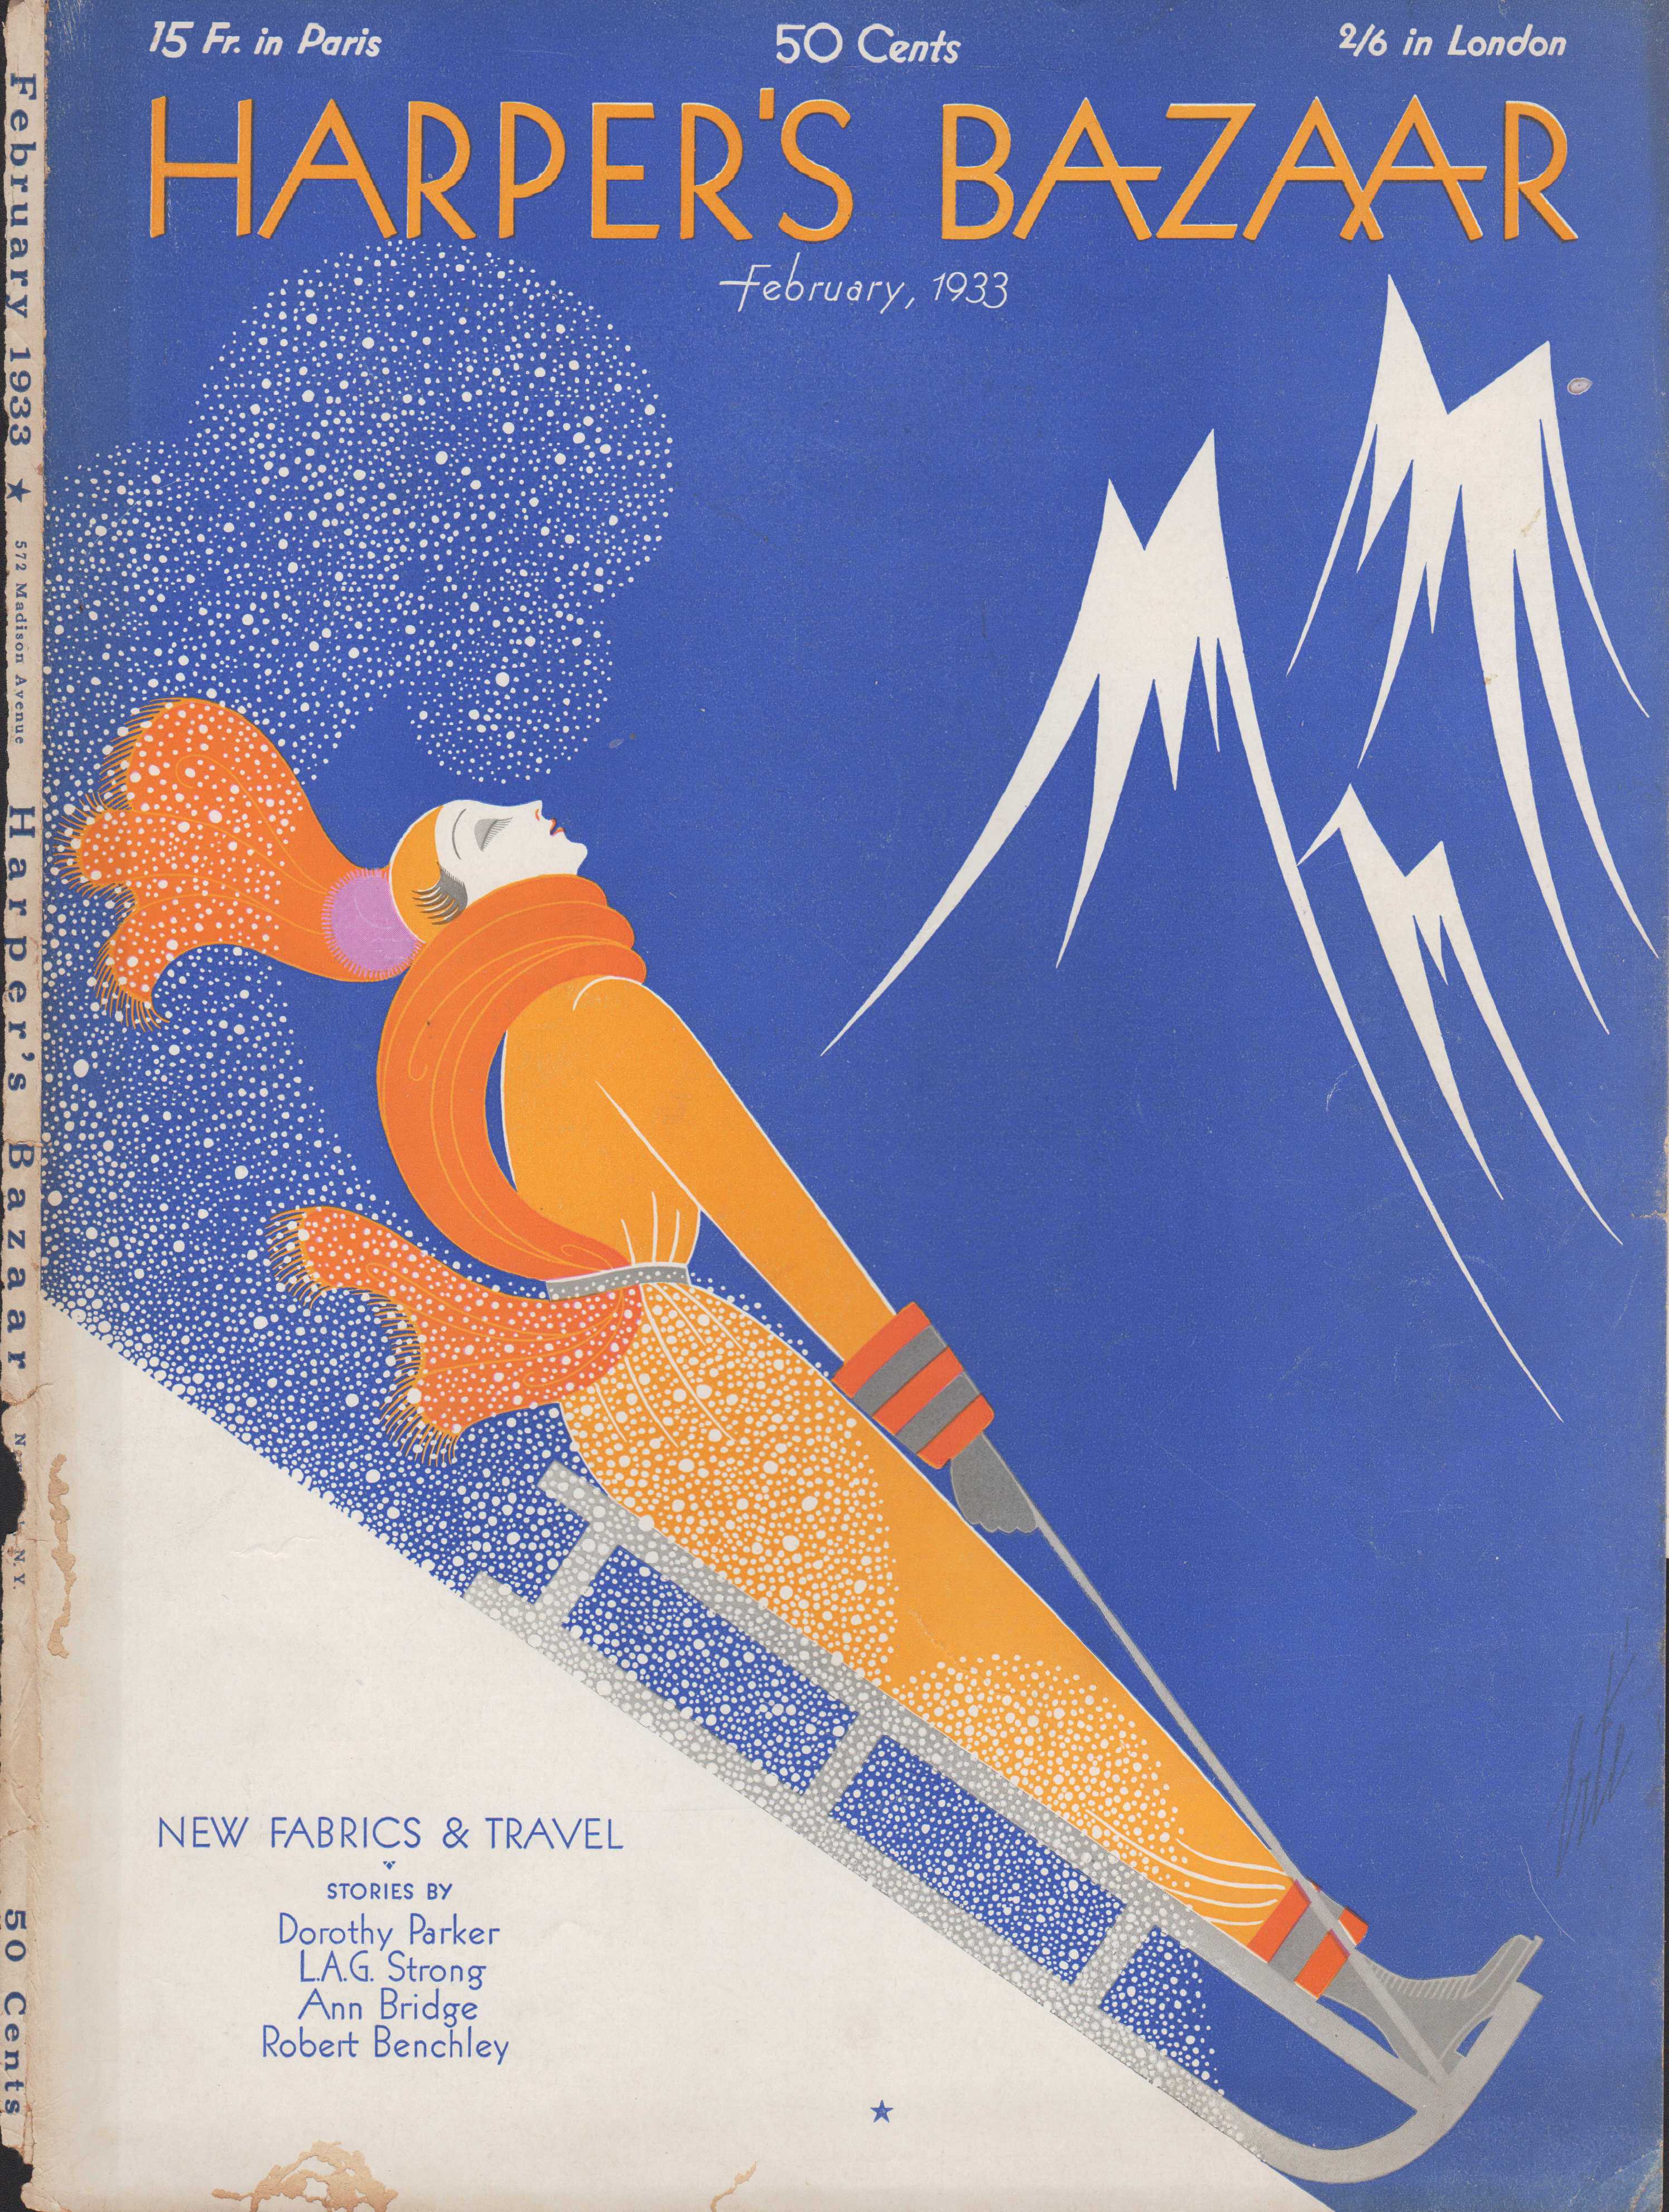 Harper's Bazar (Harper's Bazaar) - February, 1933 - Cover Only